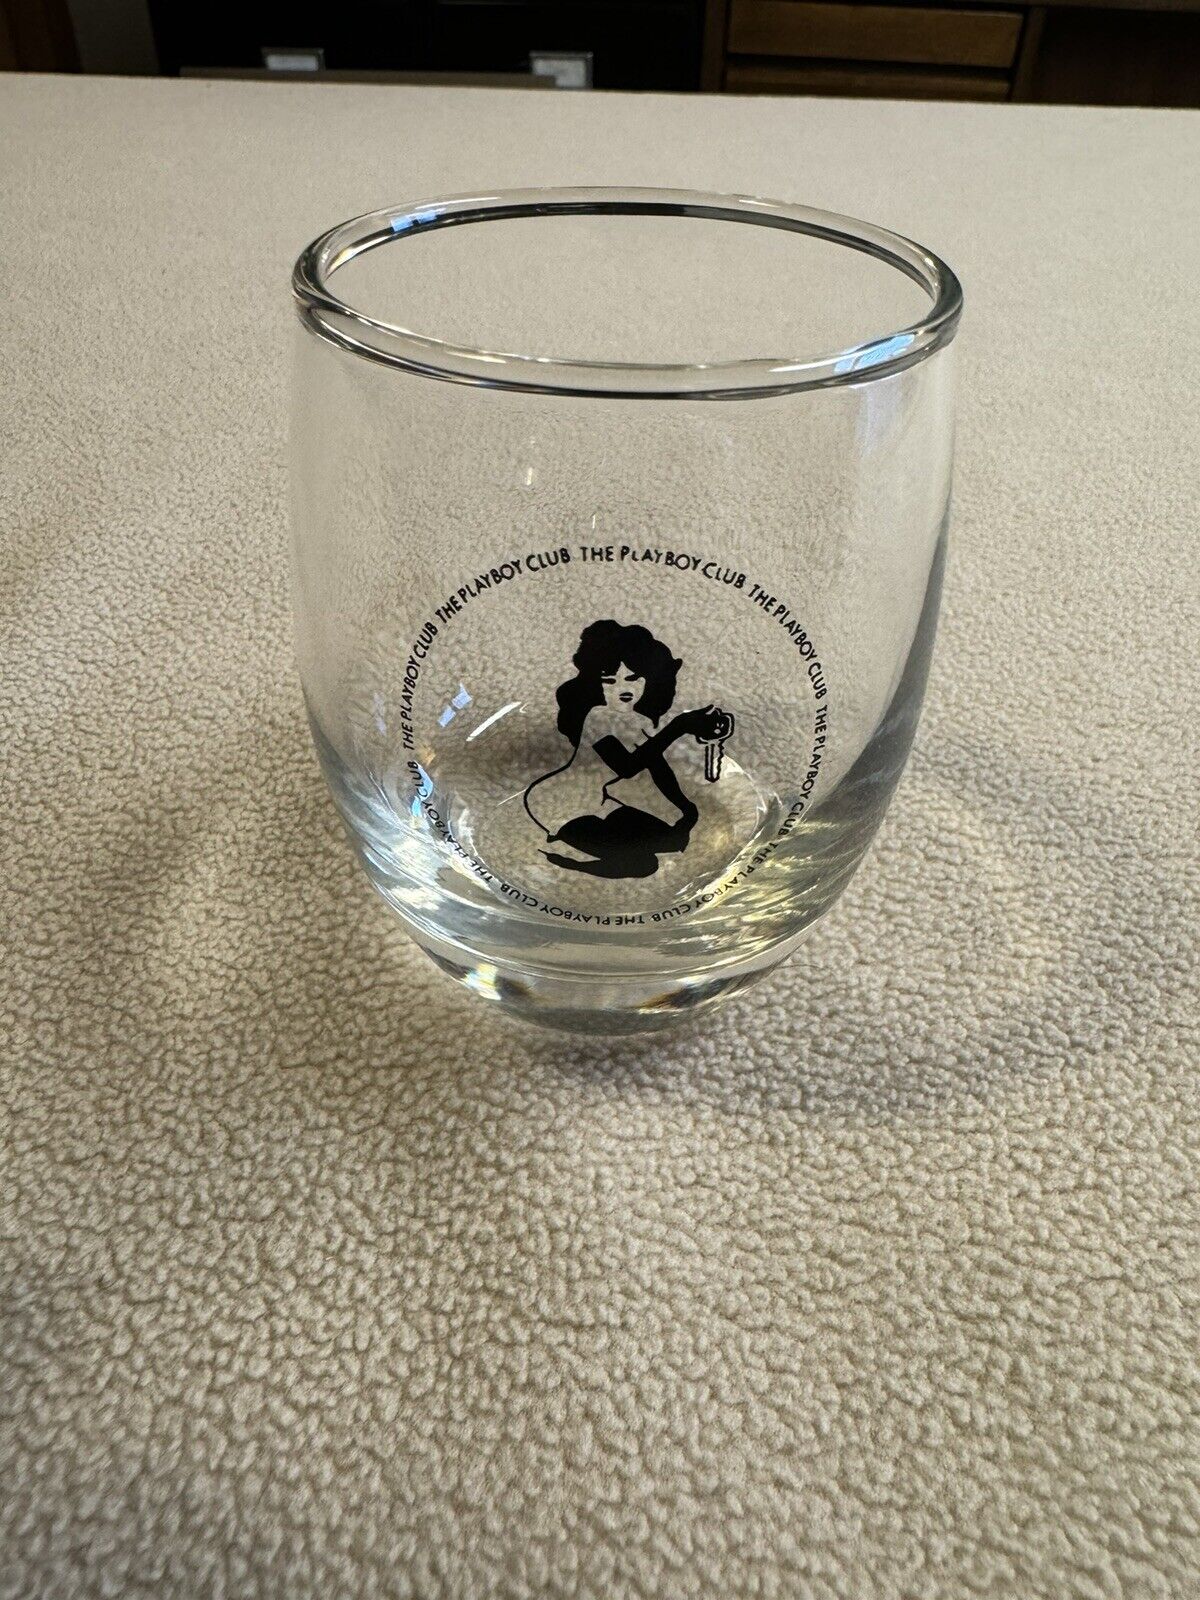 Leroy Neiman Playboy Club Low Ball (Whiskey) Glass